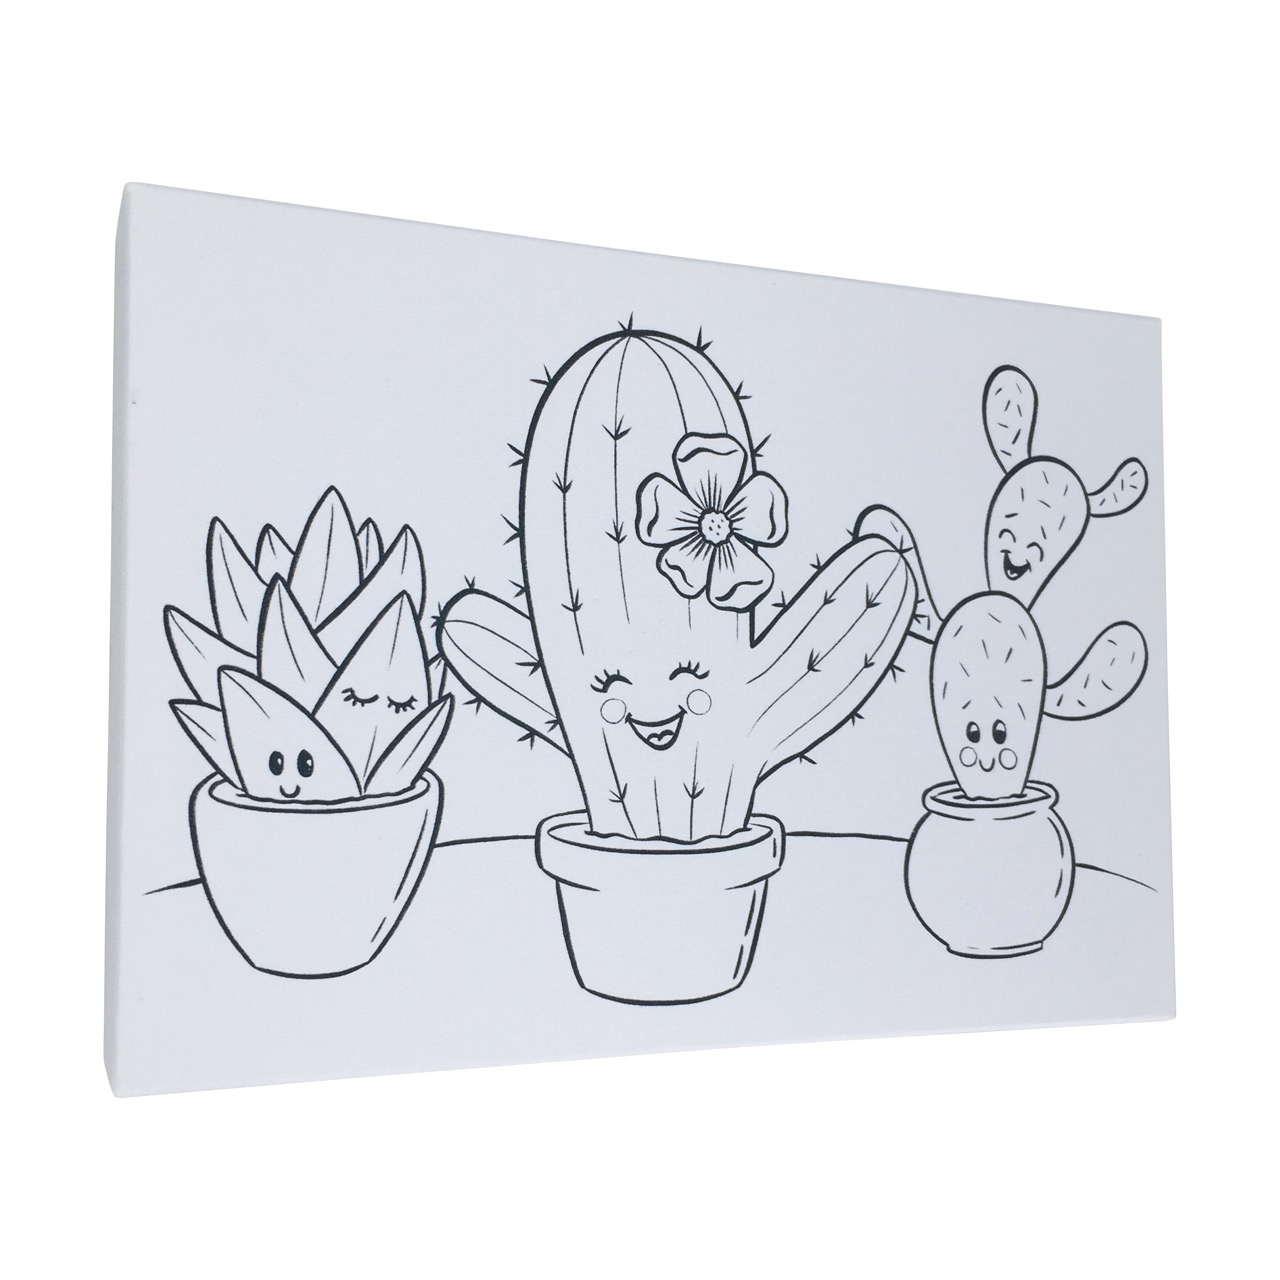 Buntbox Frame M toile en carton  (21 cm x 14.8 cm) avec cactus heureux à colorier